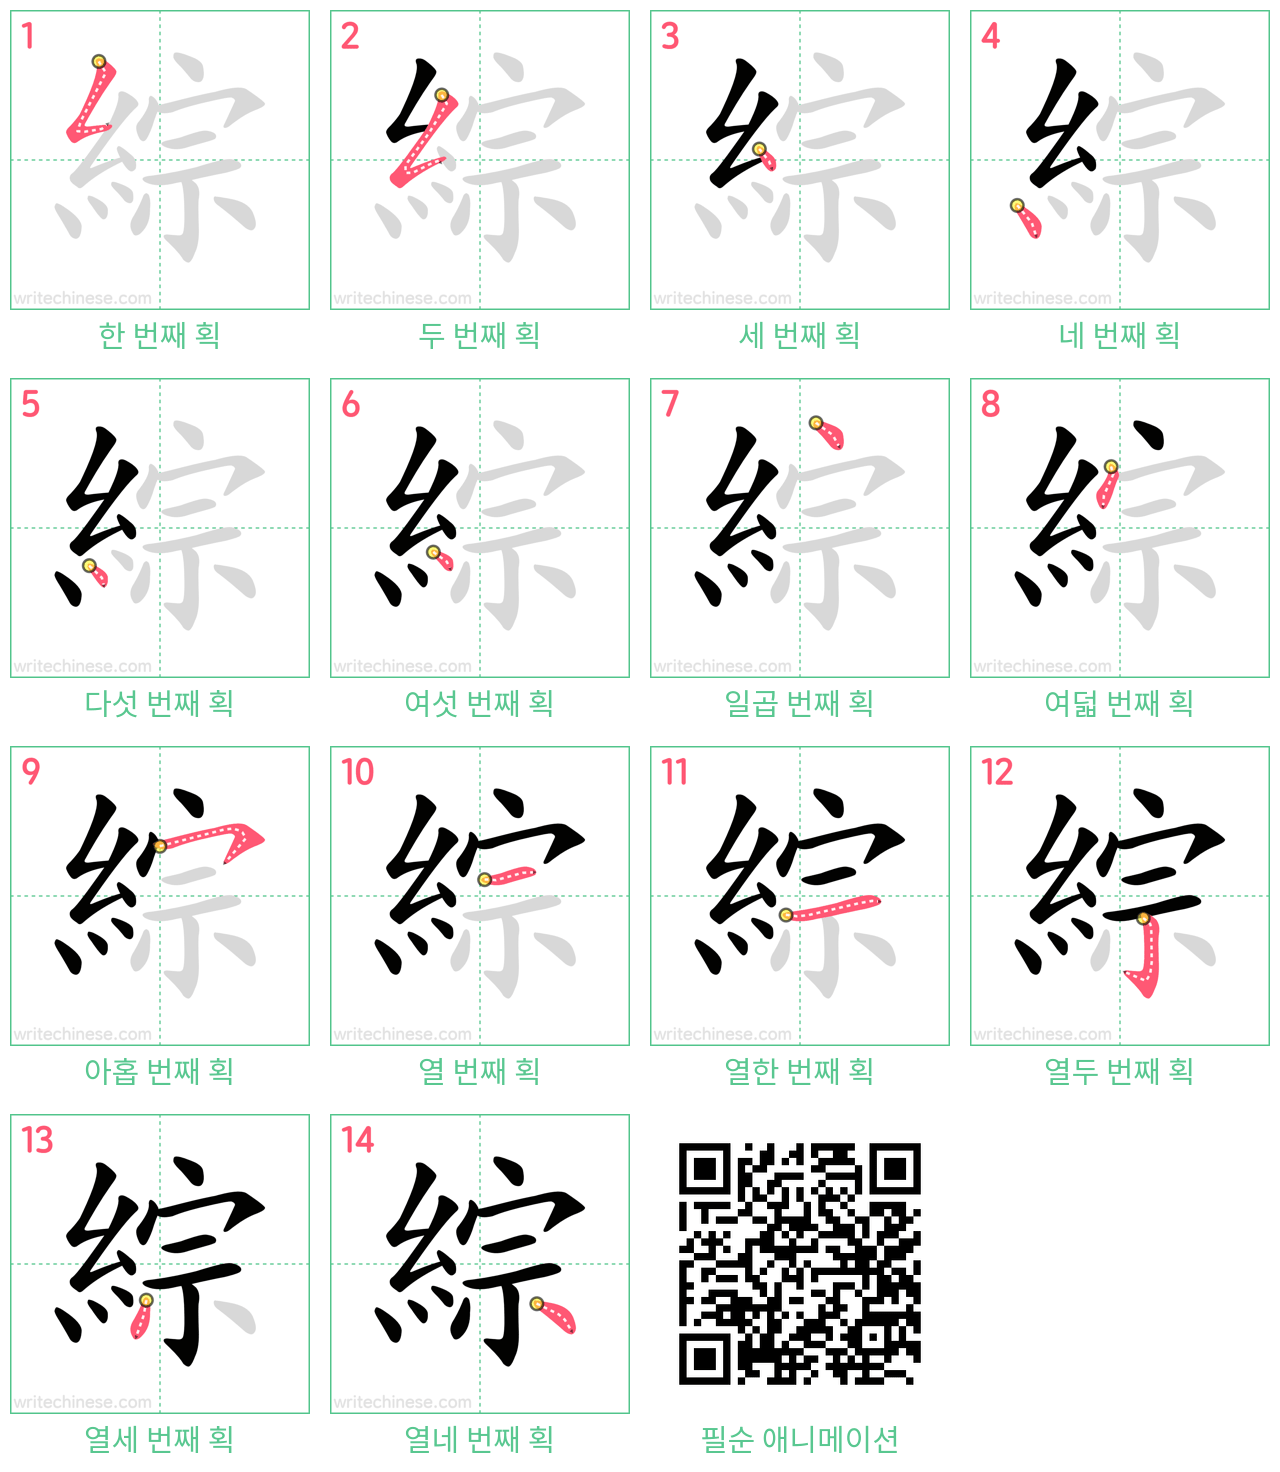 綜 step-by-step stroke order diagrams